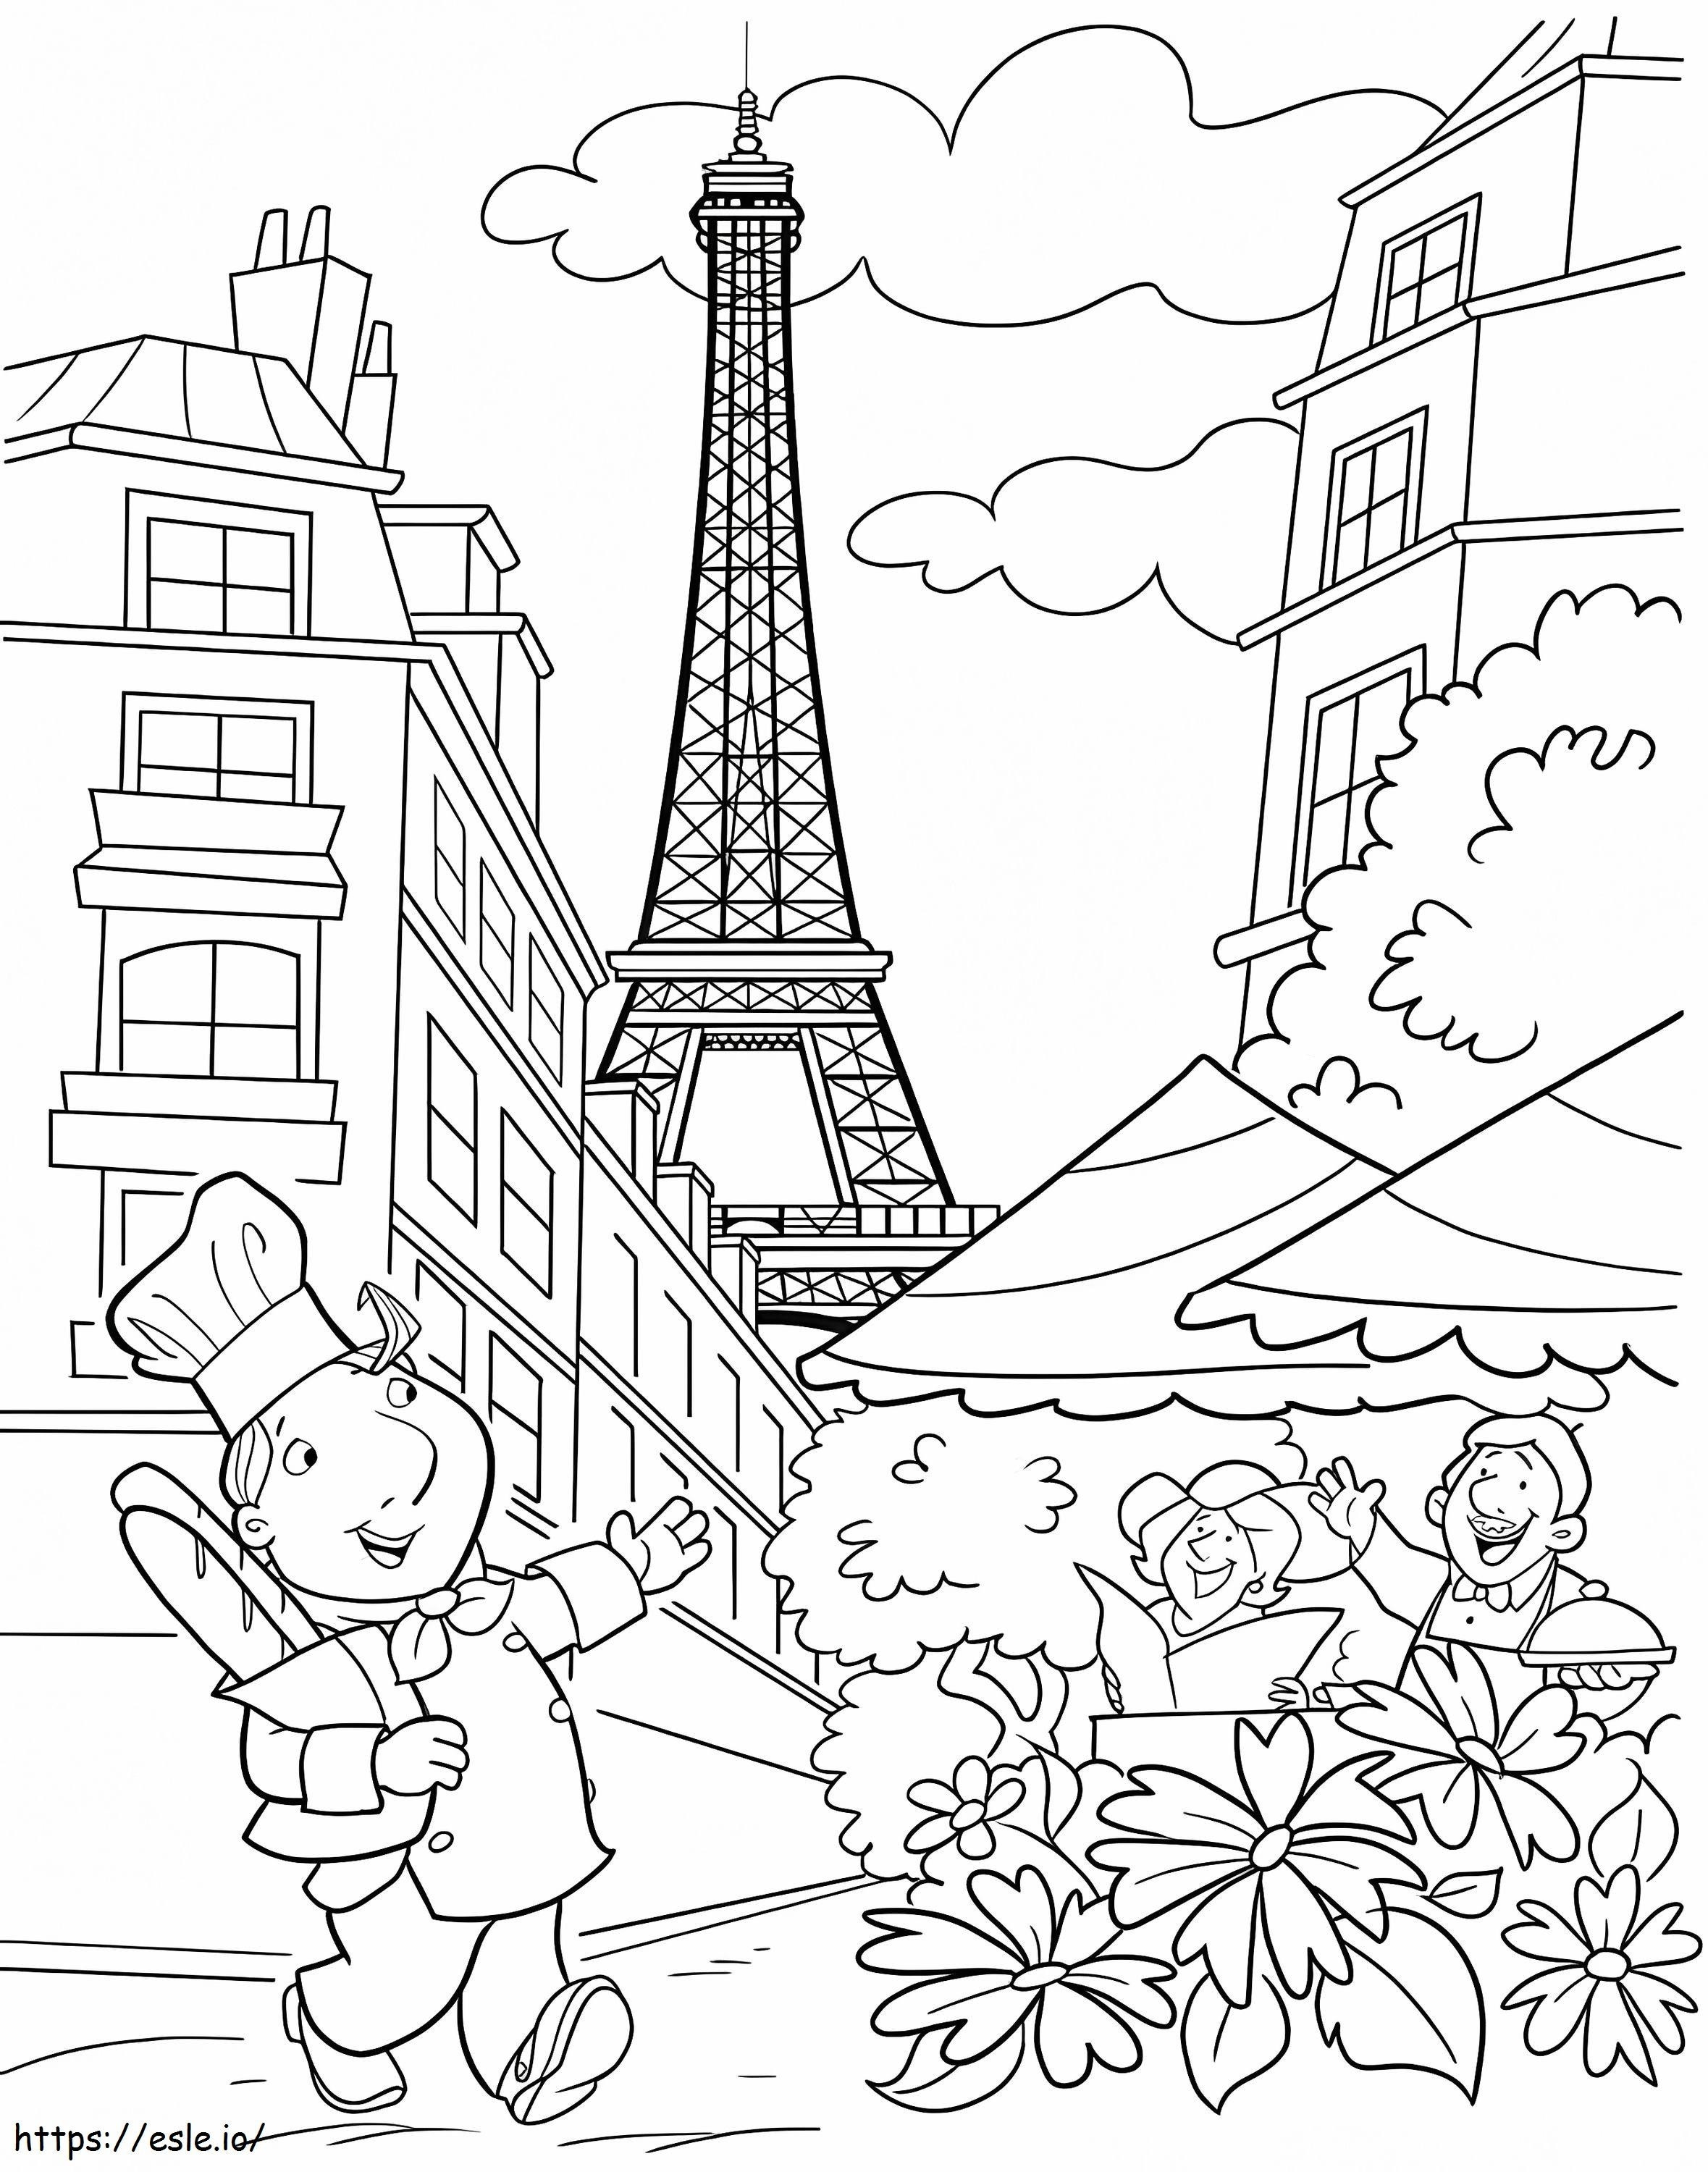 Caricatura de la ciudad de París para colorear